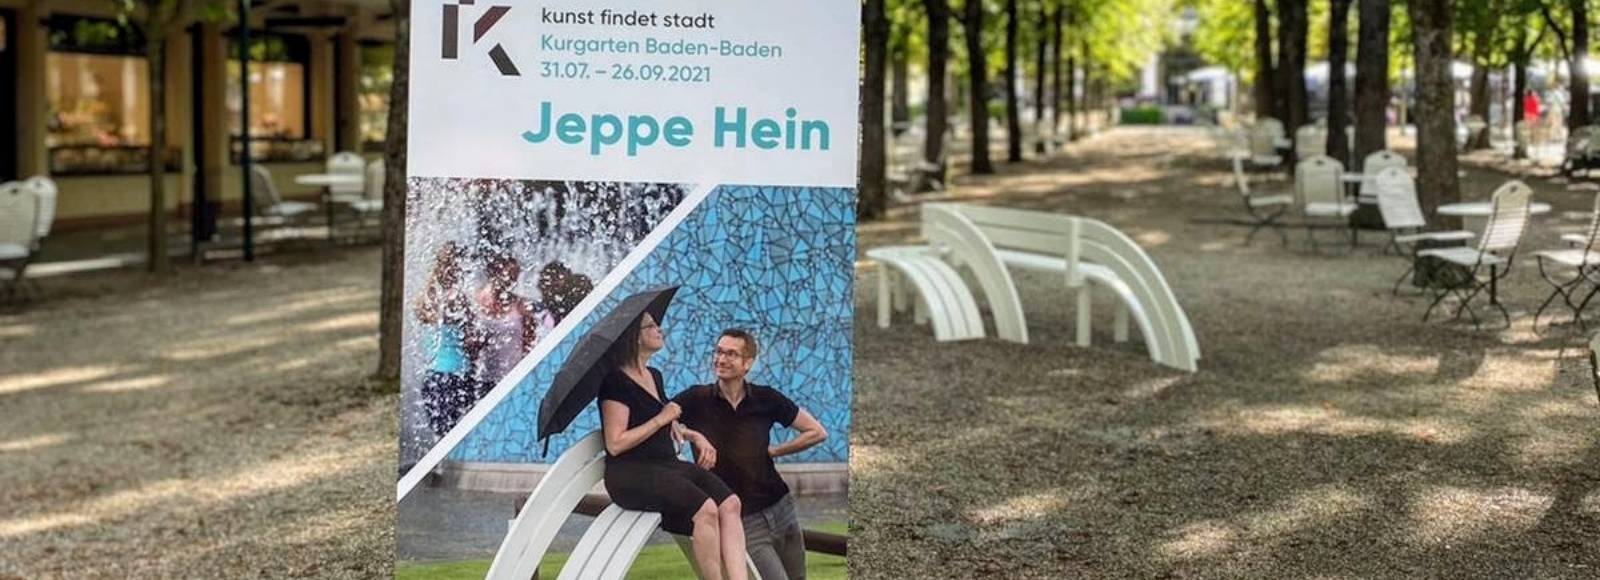 Plakat eines Kunstevents von Jeppe Hein im Kurgarten in Baden-Baden